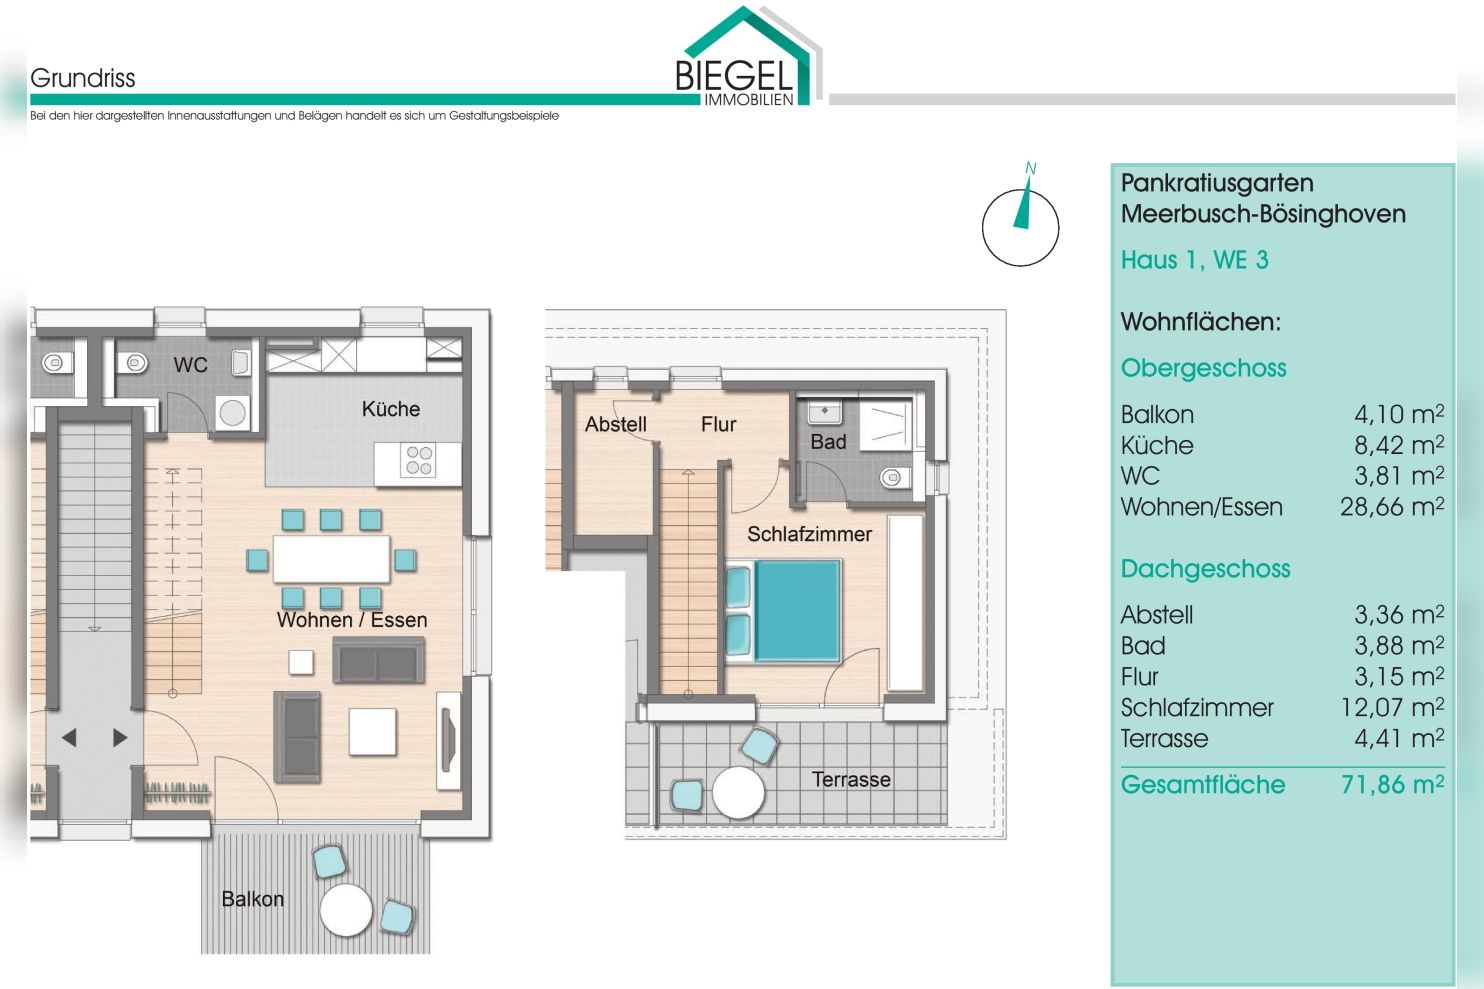 Immobilie Nr.BÖ-01.3 - BÖ-01.3;  2-Raum-Maisonettewohnung über OG und DG - Bild main.jpg